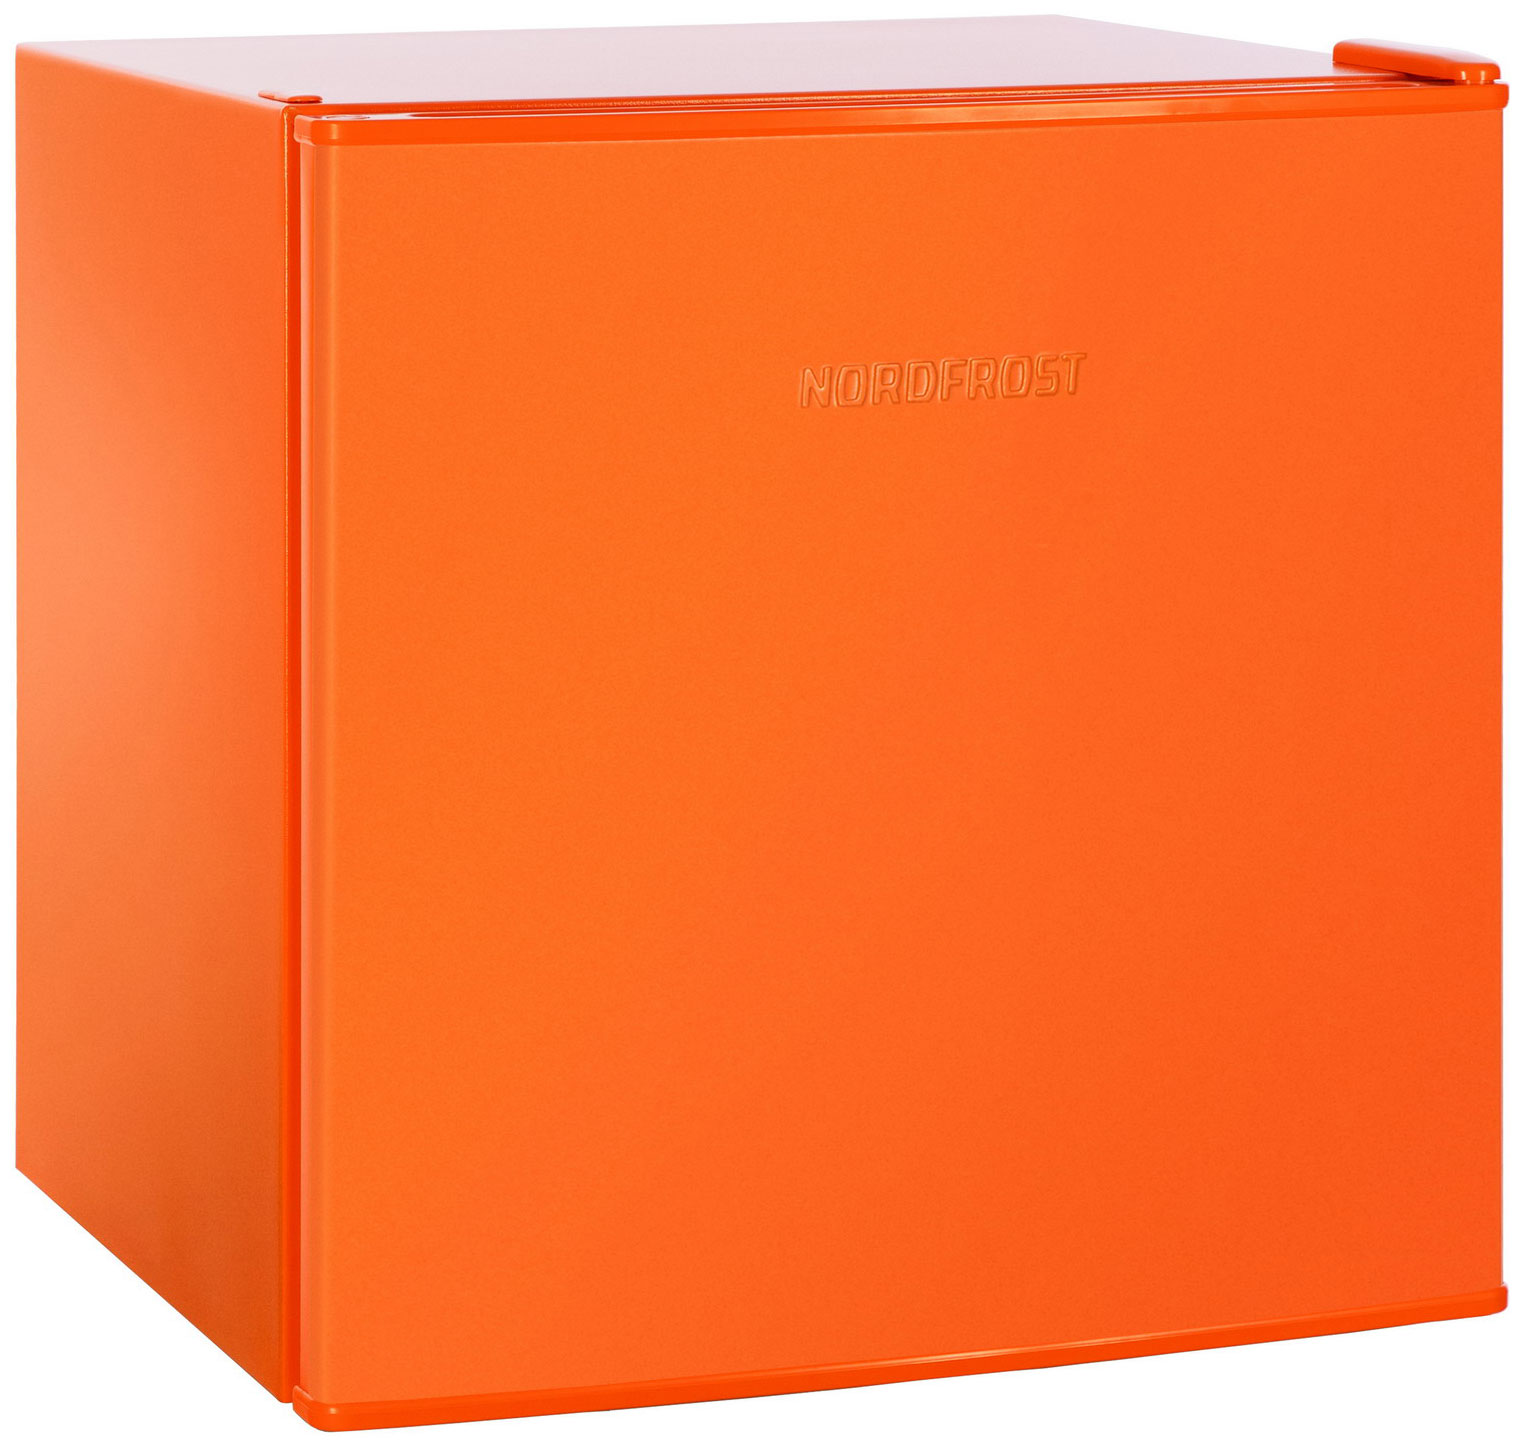 Холодильник NordFrost NR 402 оранжевый рюкзак молодёжный 40 х 25 х 13 см эргономичная спинка отделение для ноутбука grizzly 355 чёрный оранжевый rb 355 1 3